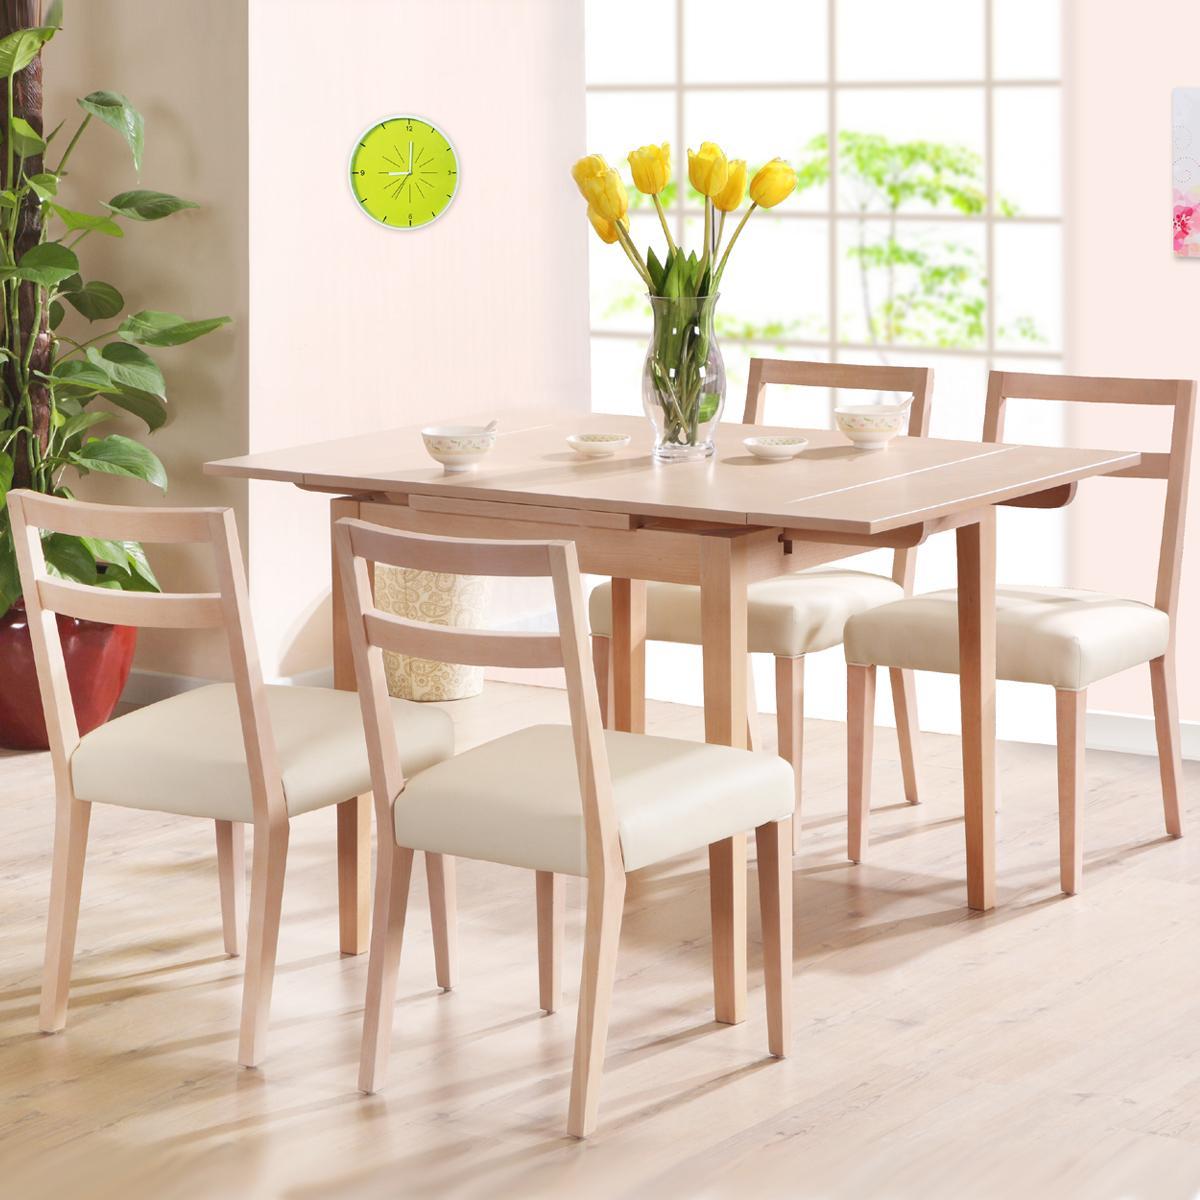 Bộ bàn ăn 4 ghế ĐẸP giá rẻ bằng gỗ tự nhiên